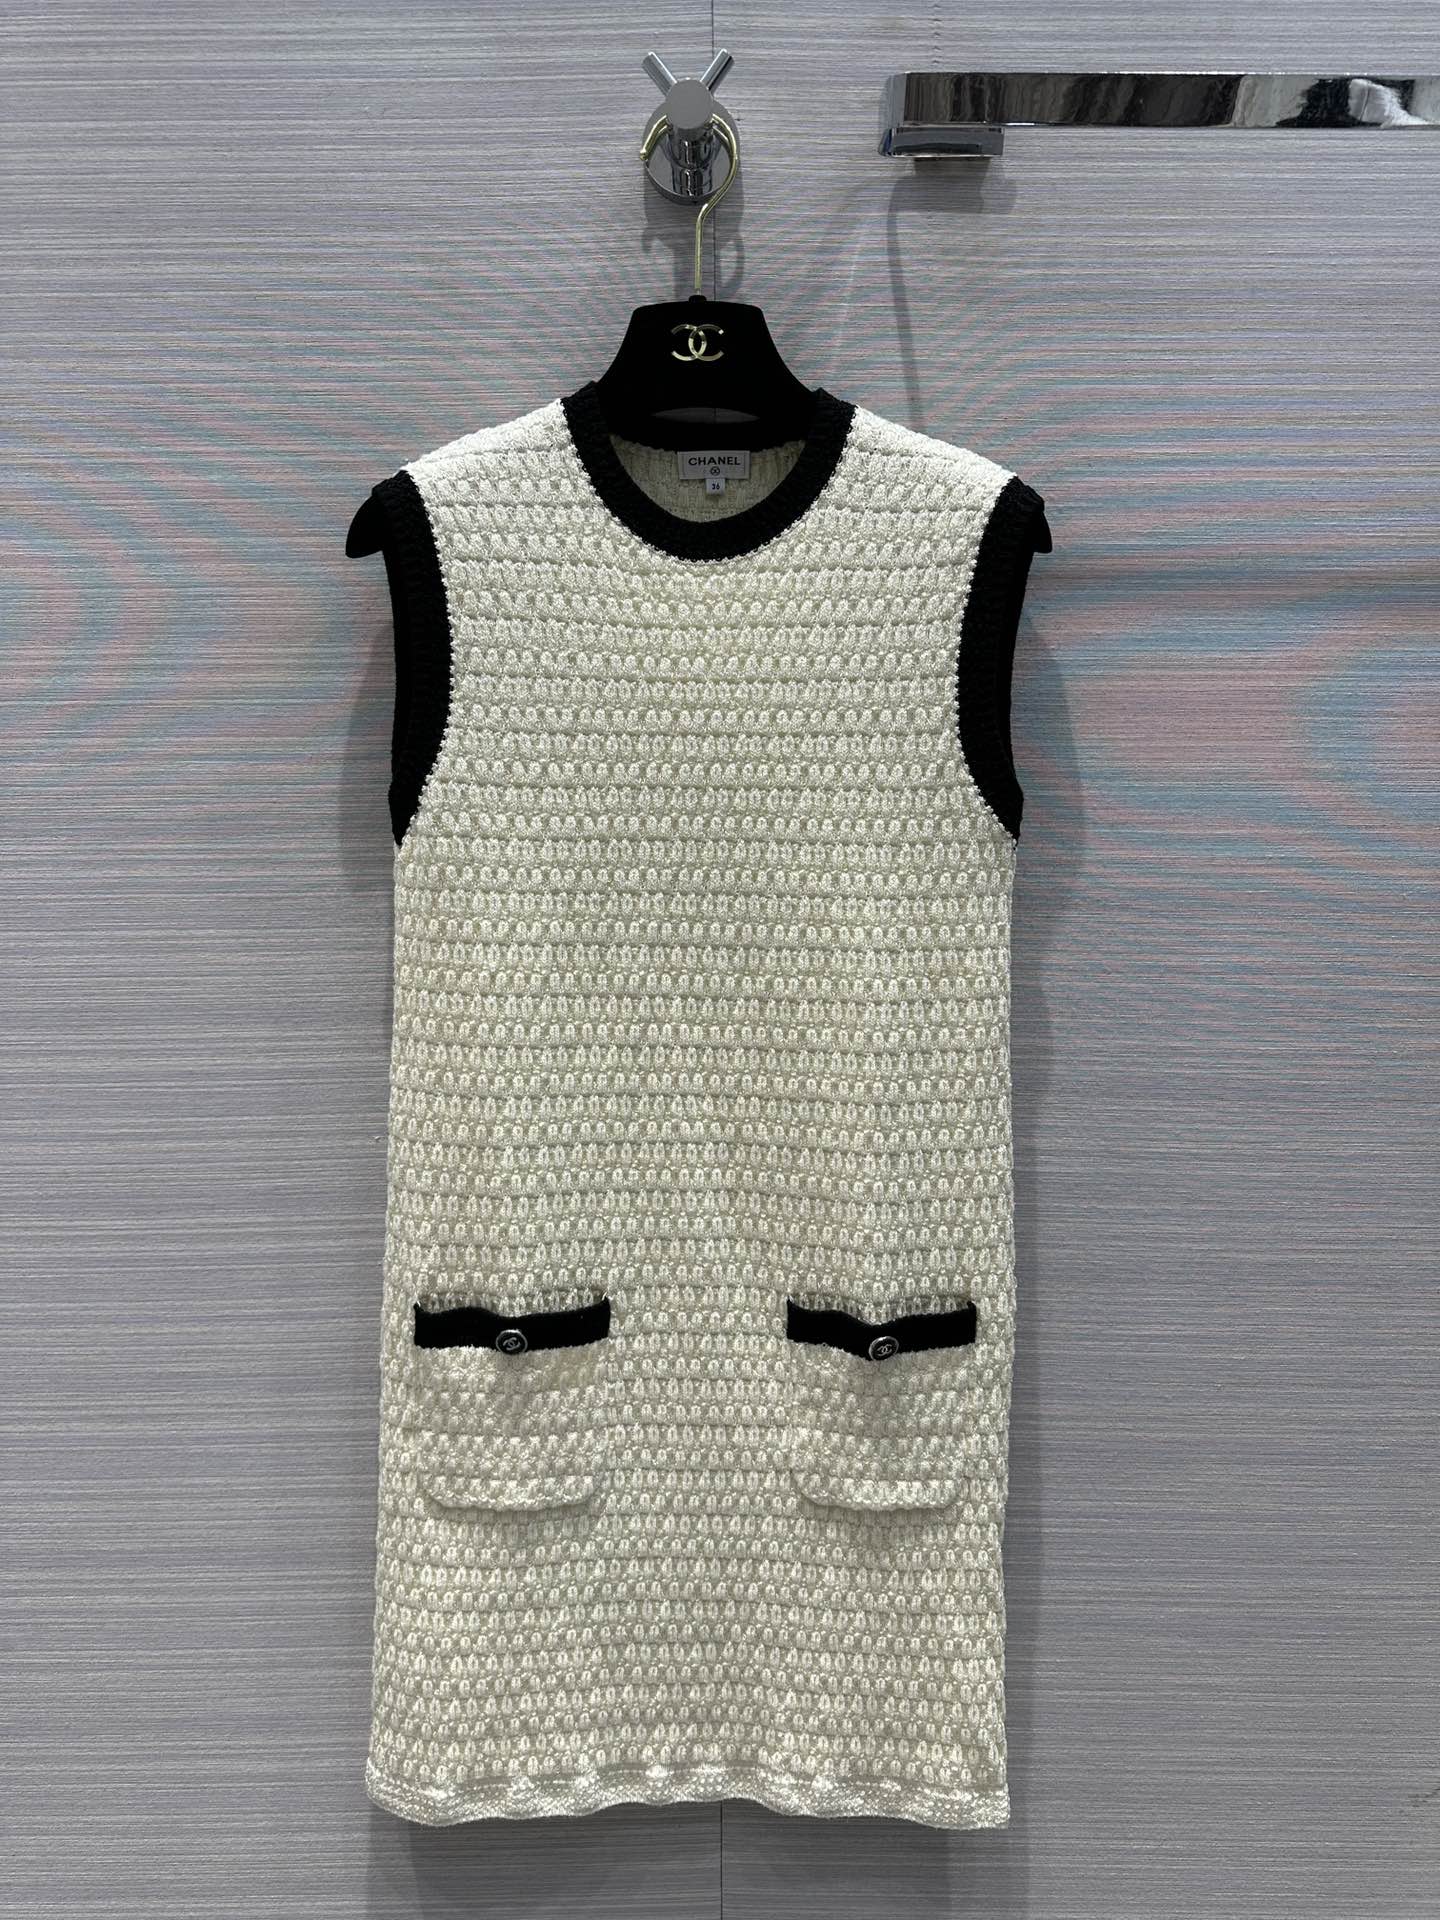 Chanel Abbigliamento Abiti da Donna Canotta Nero Bianco Tessitura